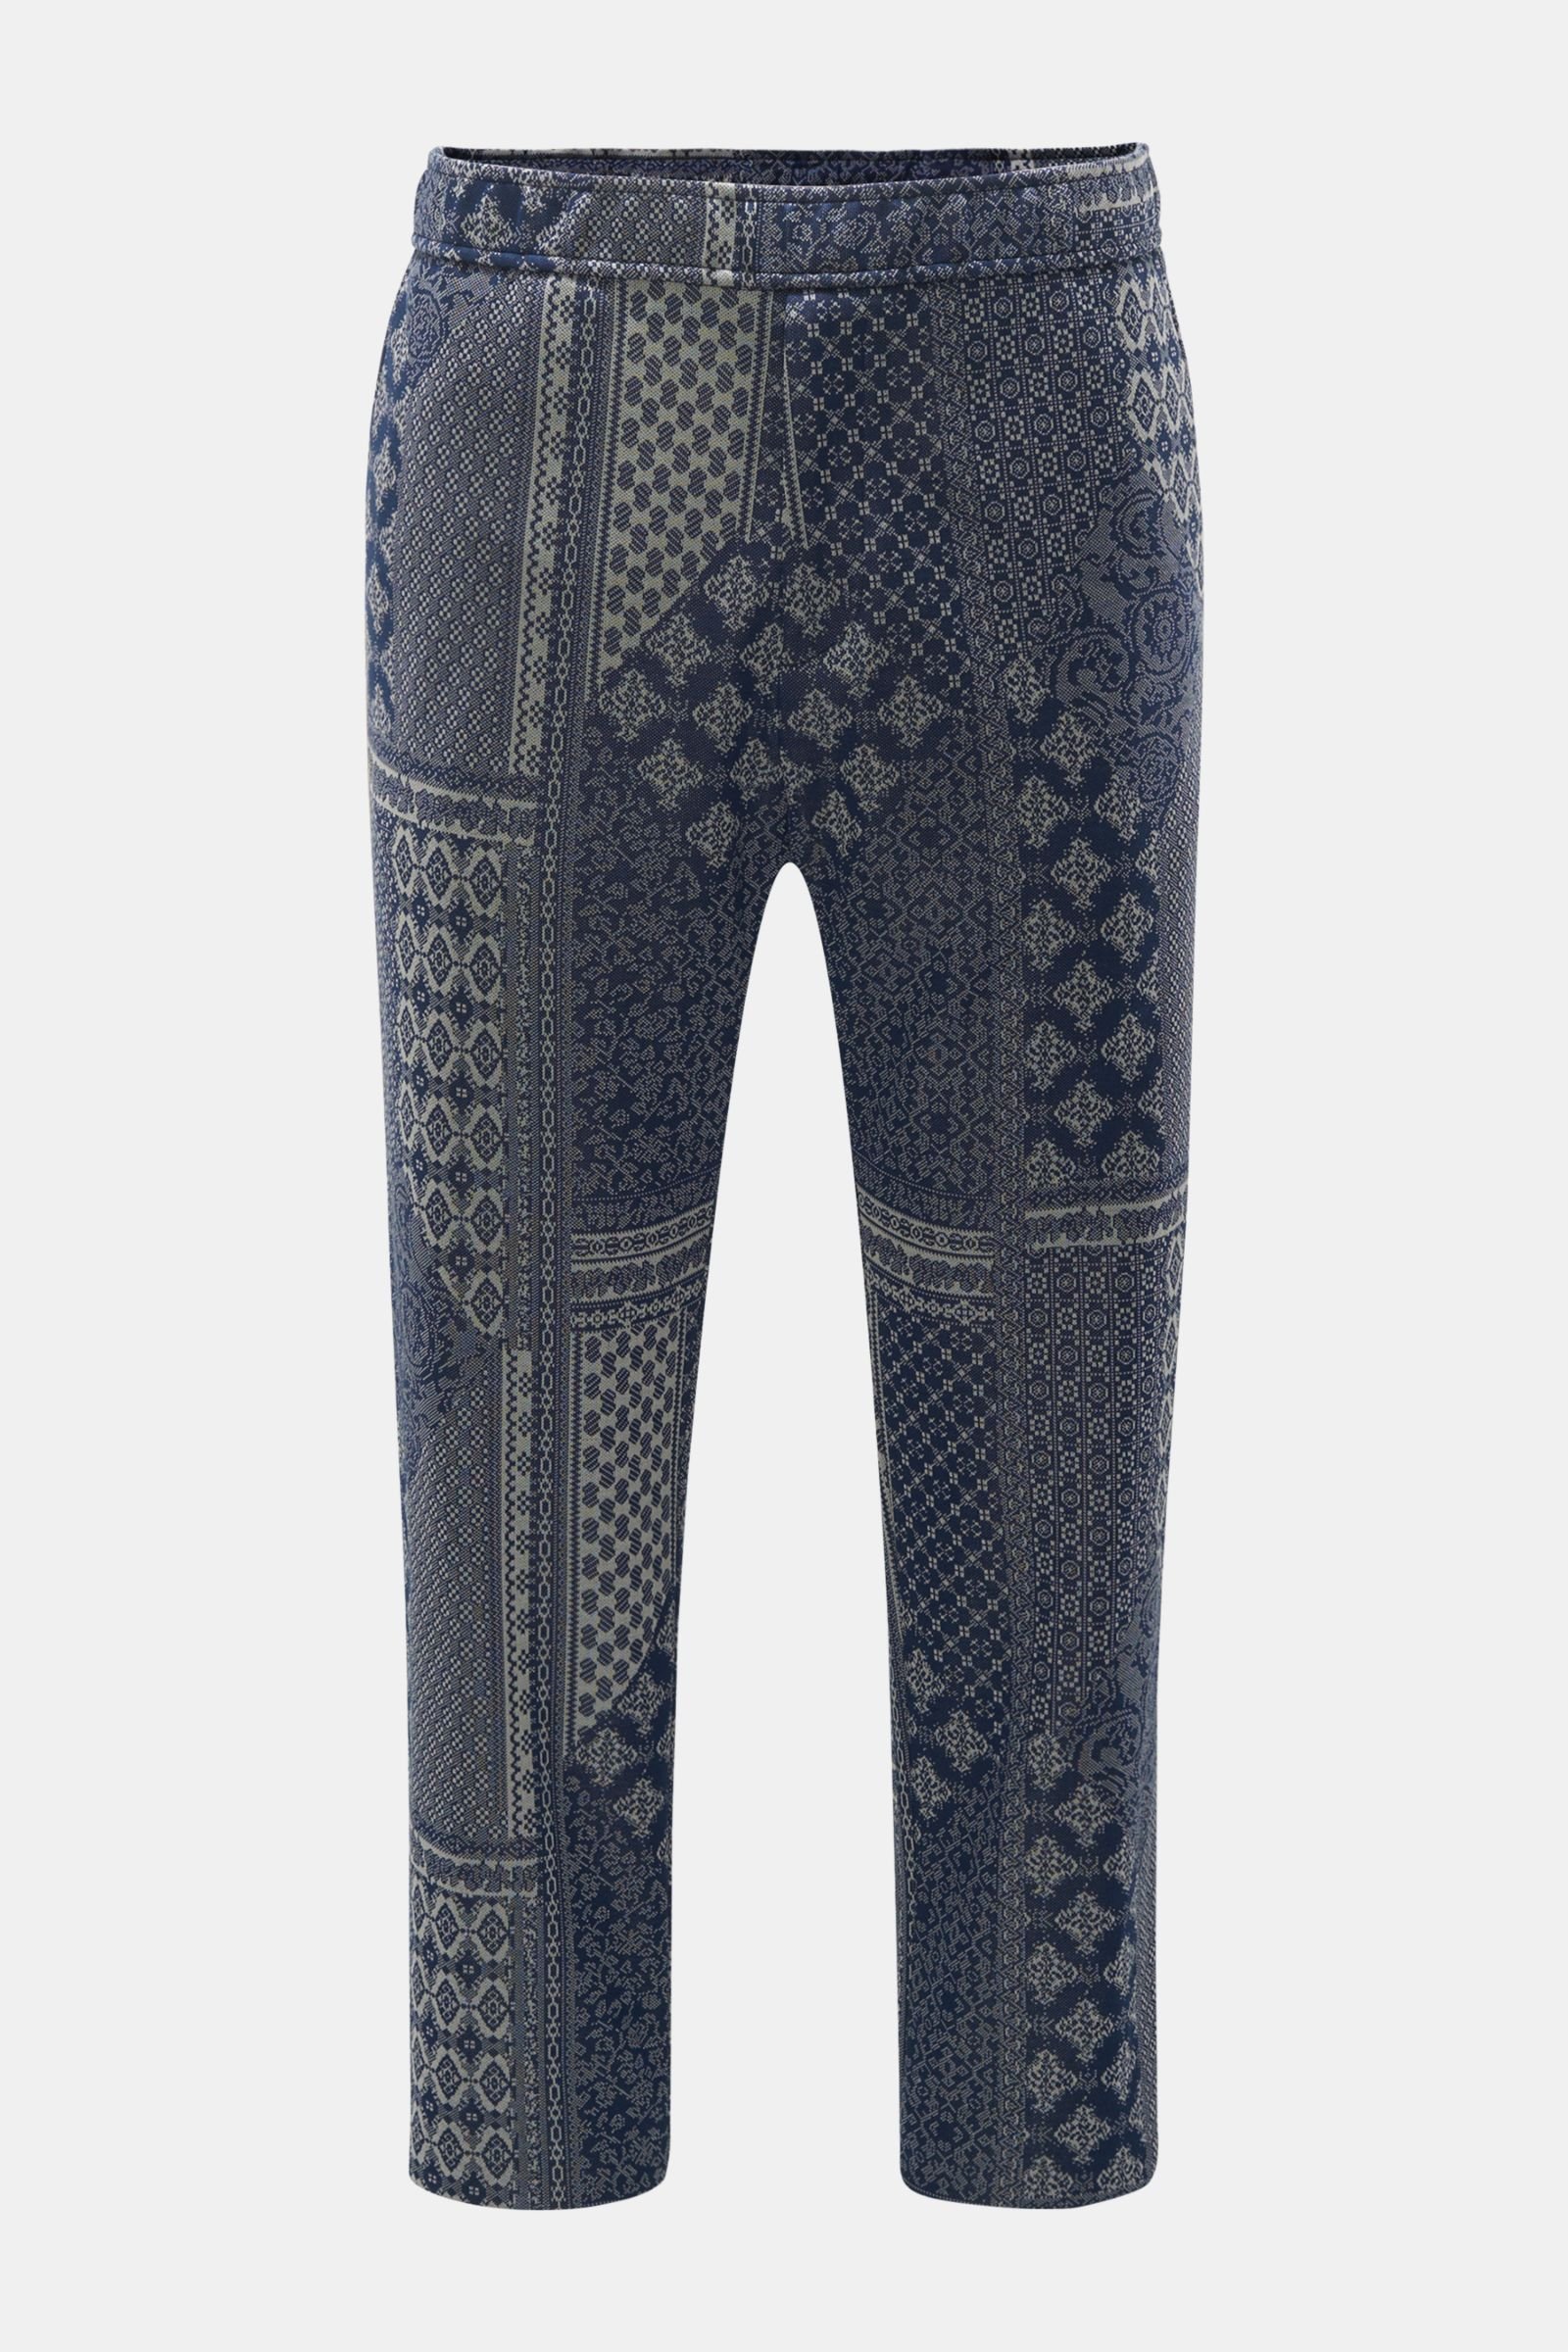 Jogger pants navy/light grey patterned